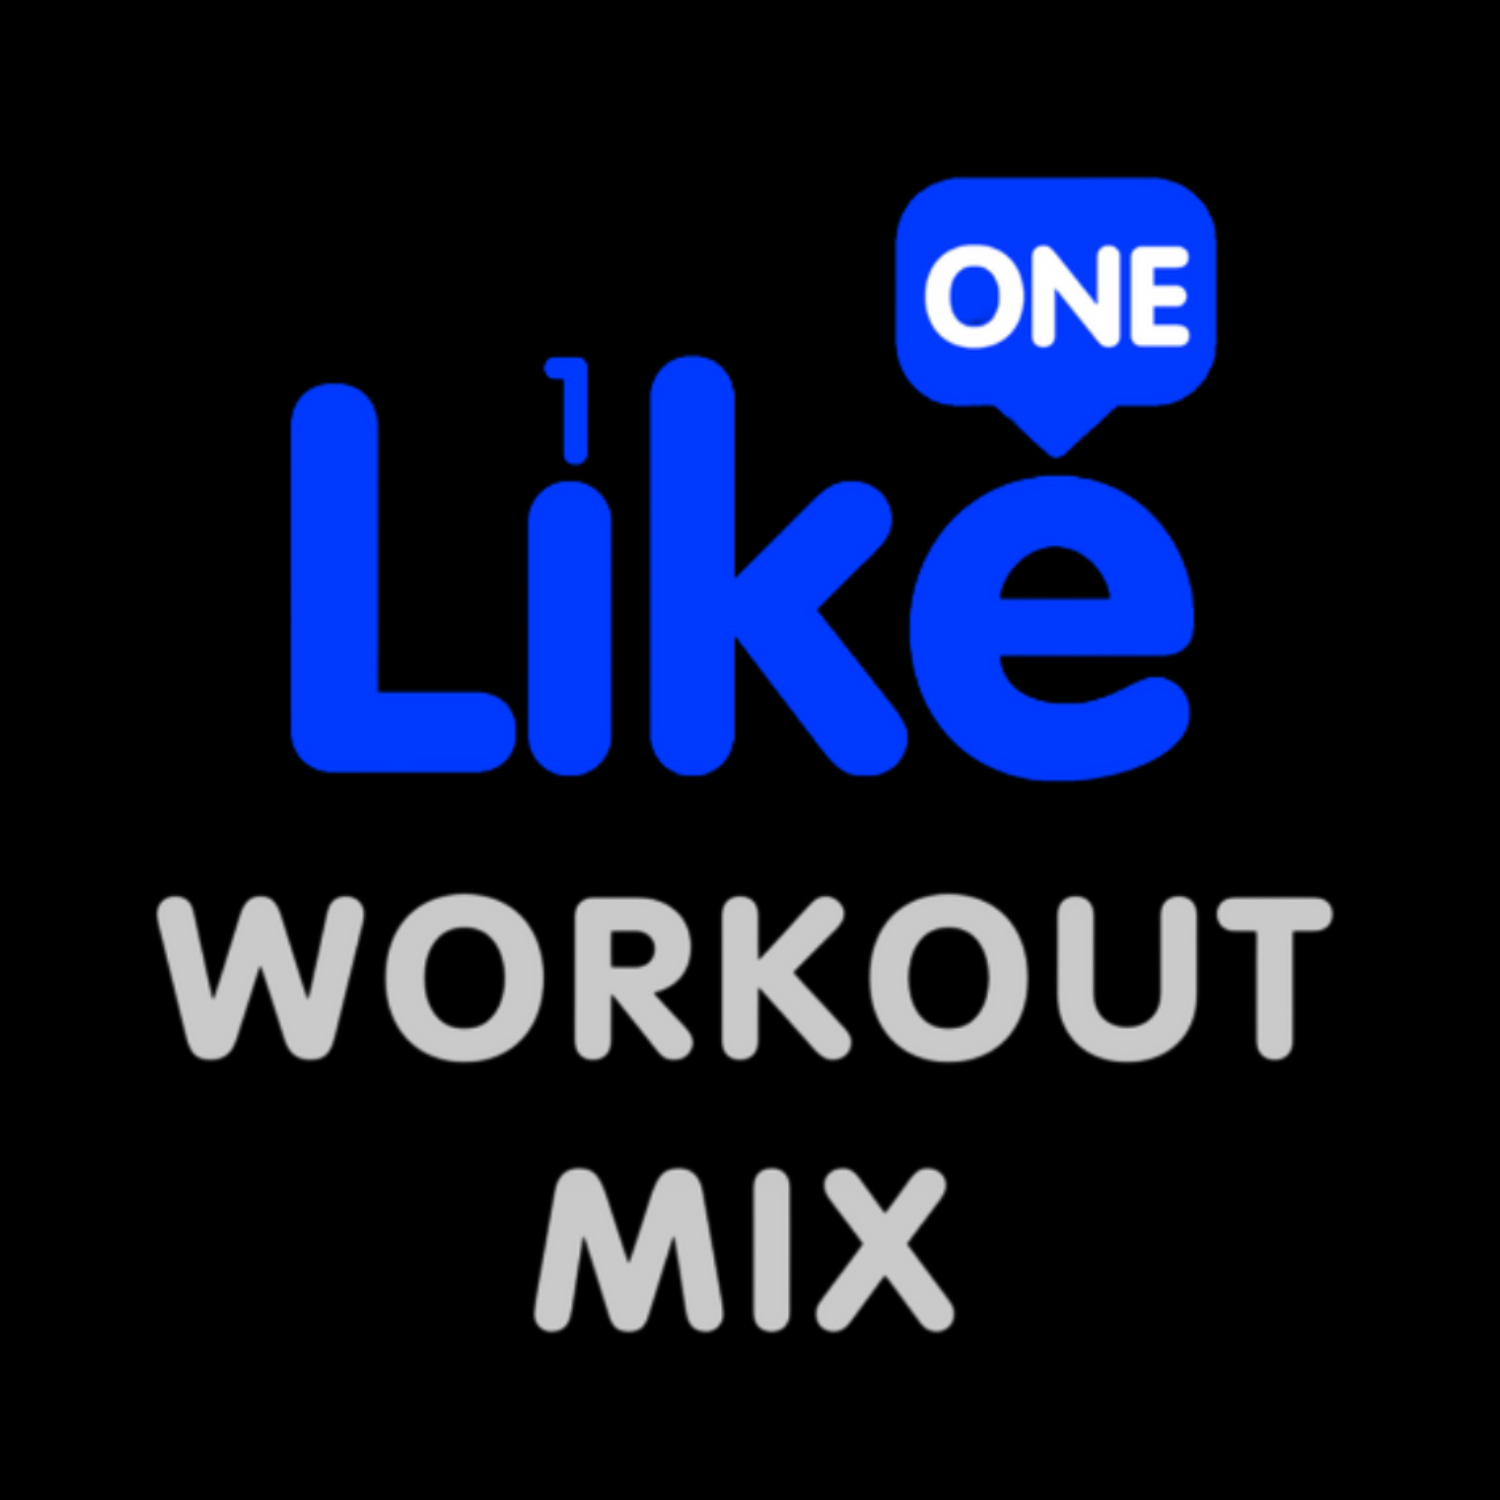 Like One Workout Mix 075